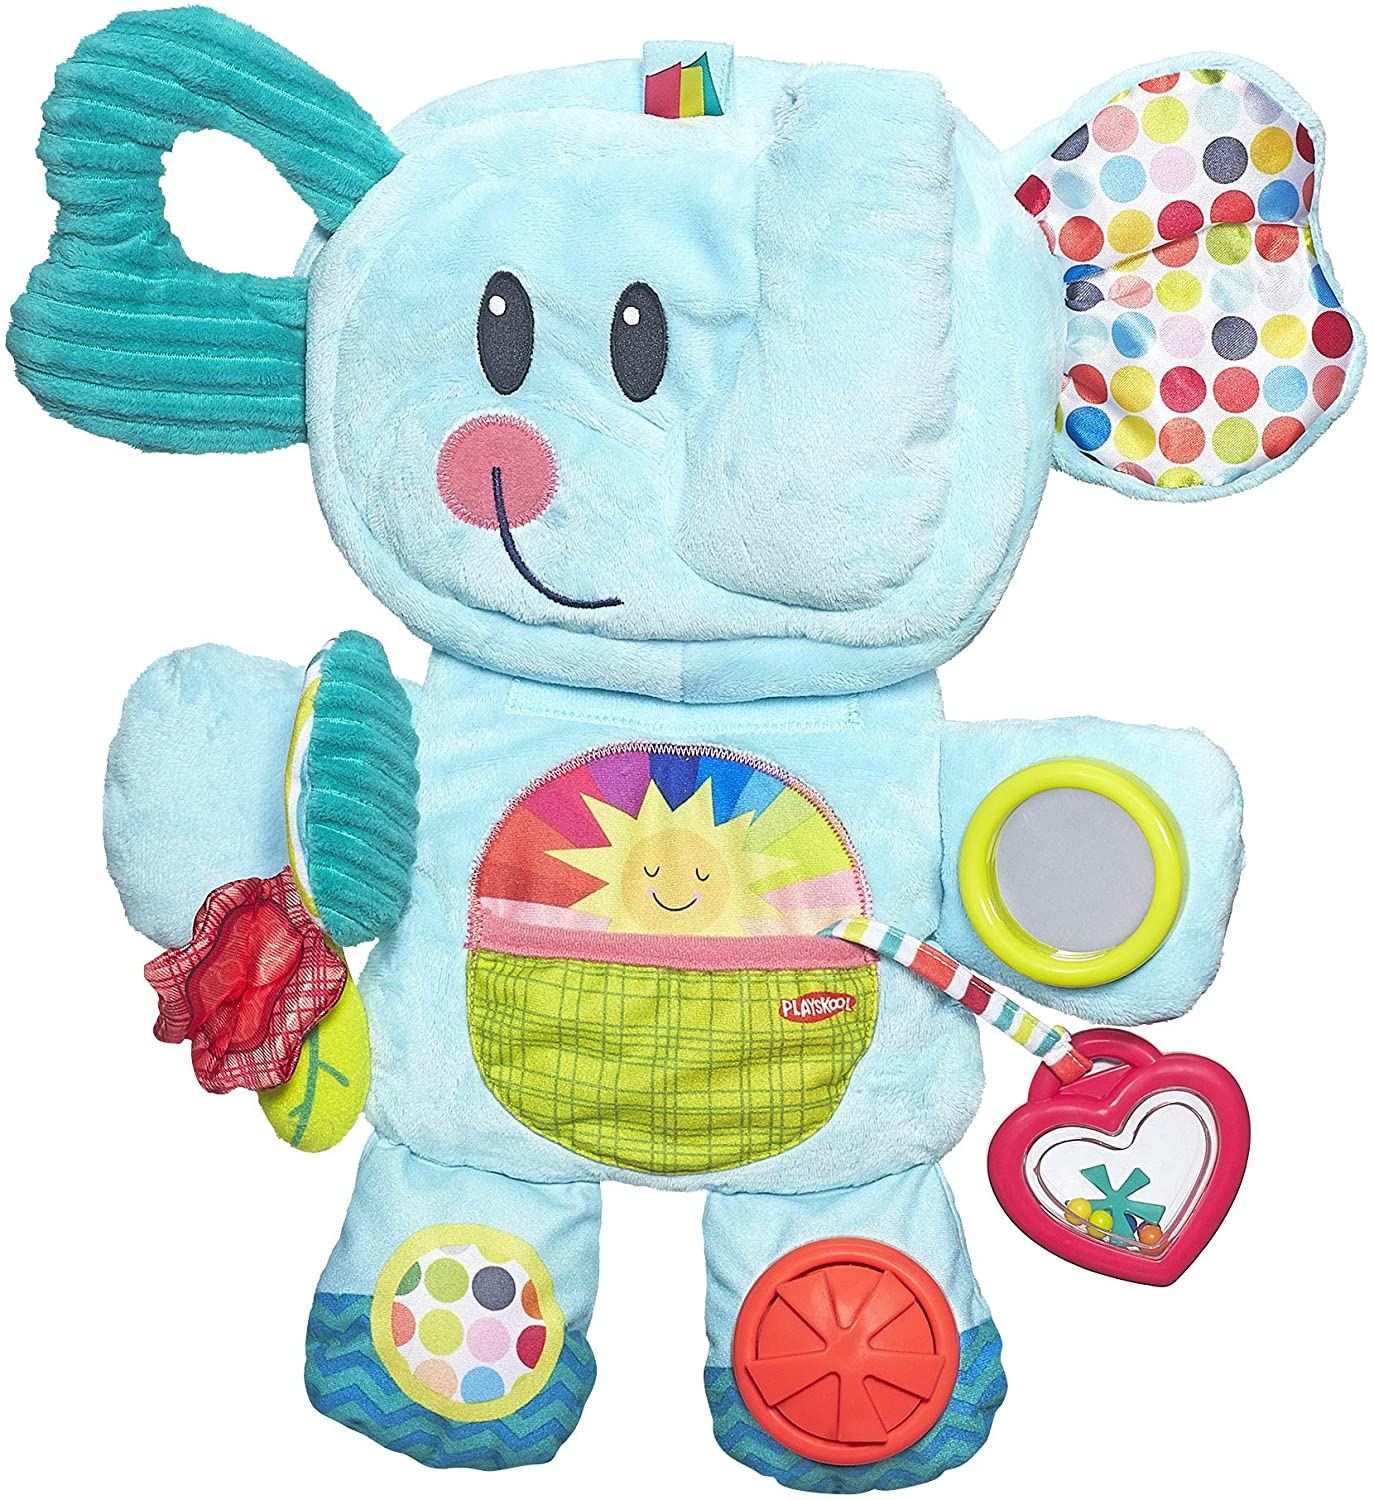 10" Playskool Fold 'n Go Elephant Tummy Time Toy (Blue) $16.01 + Free Shipping w/ Prime or on $25+